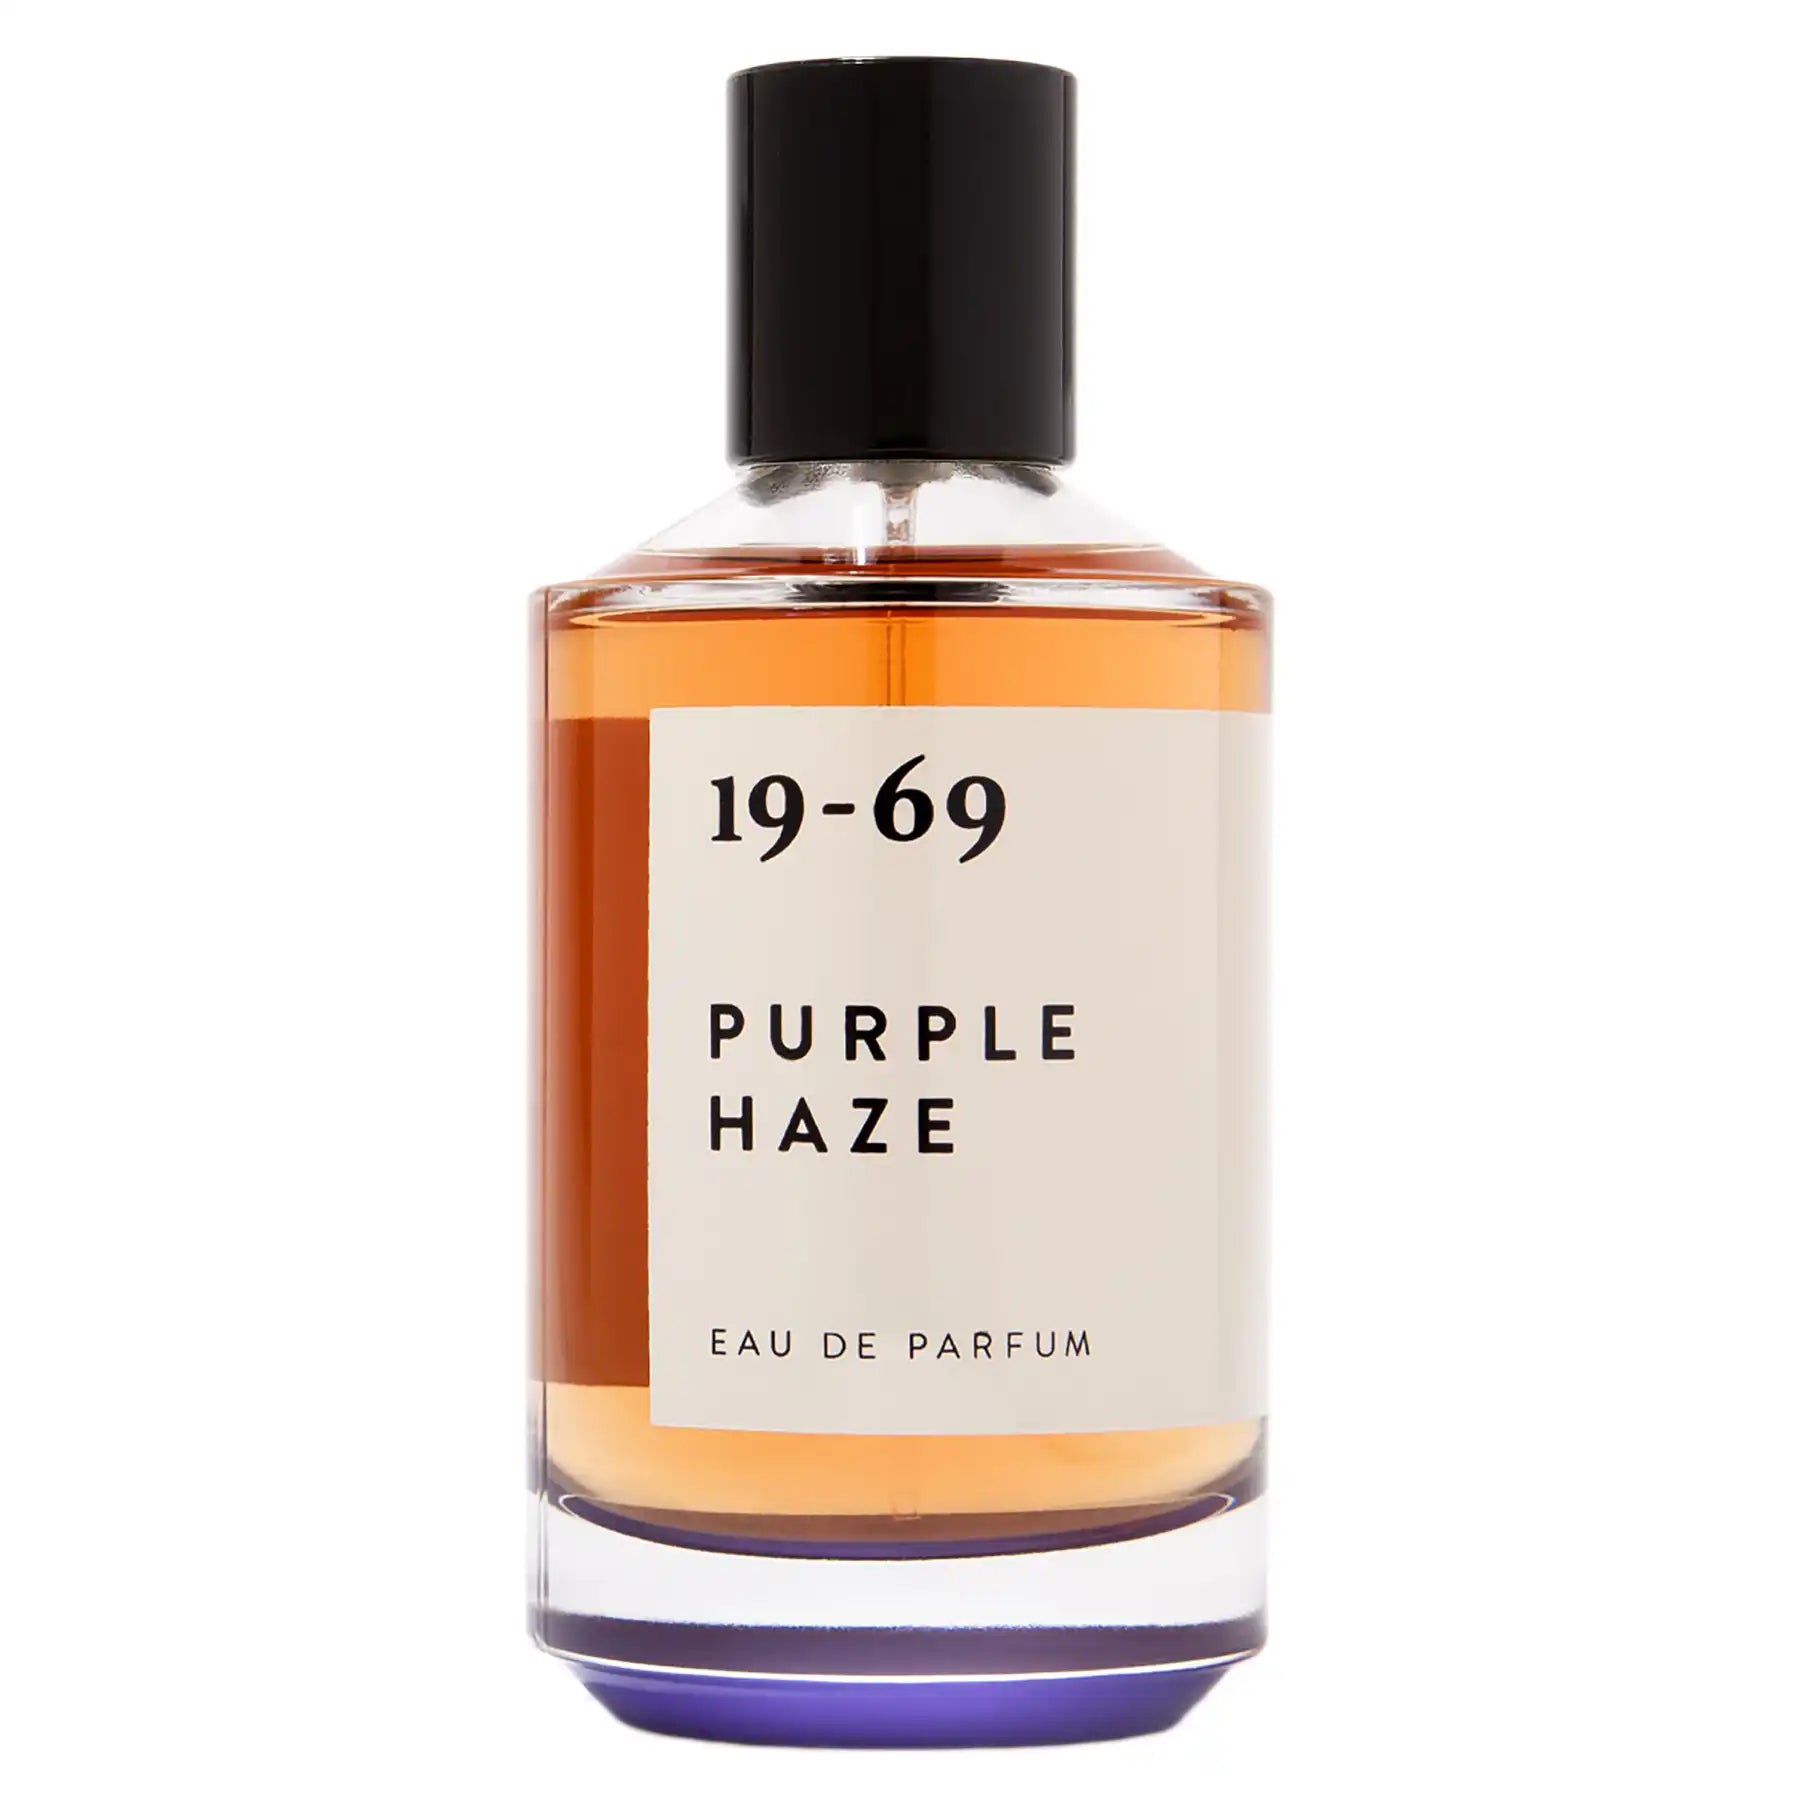 19-69 Purple Haze Eau de Parfum